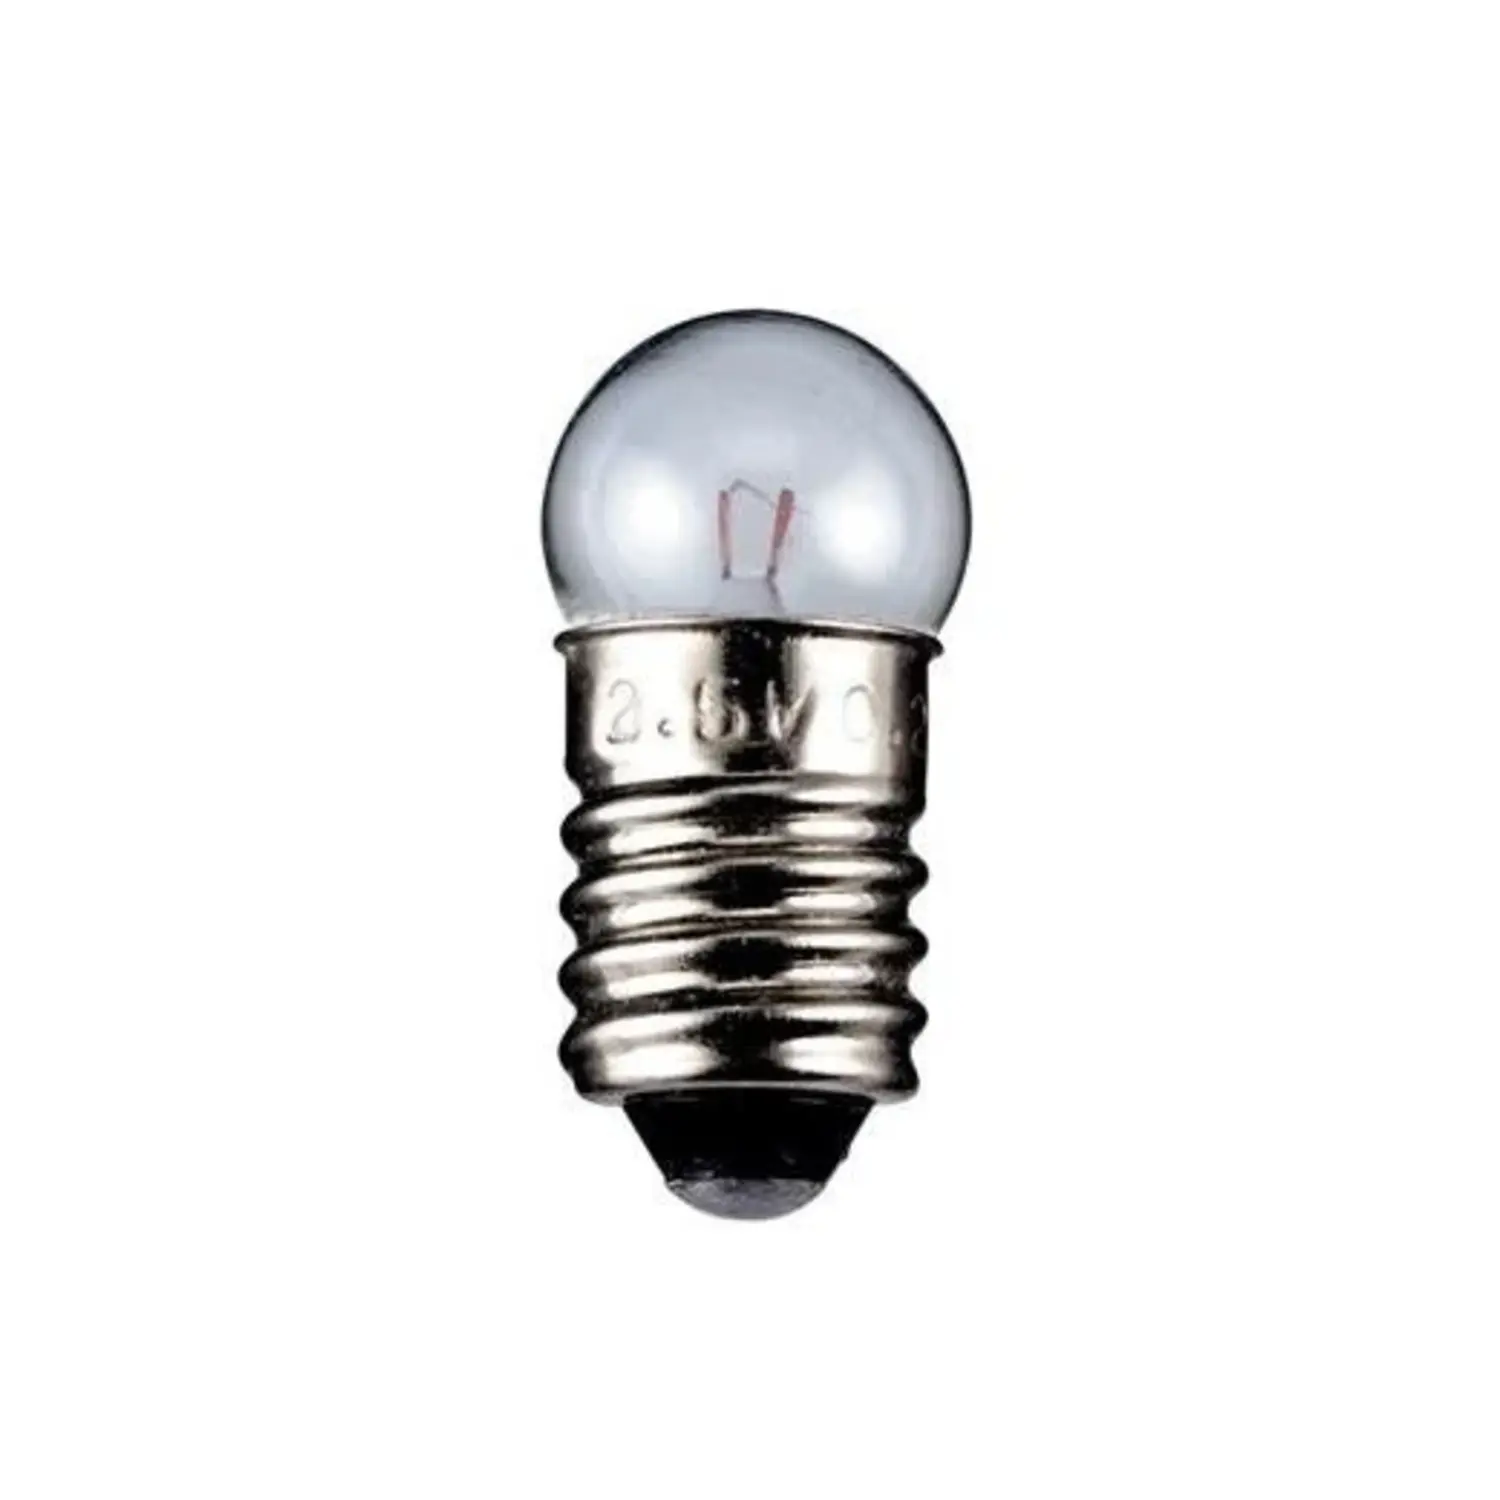 immagine del prodotto lampadina globulare chiara 6 volt trasparente E10 CE 0,30 watt wnt 9590